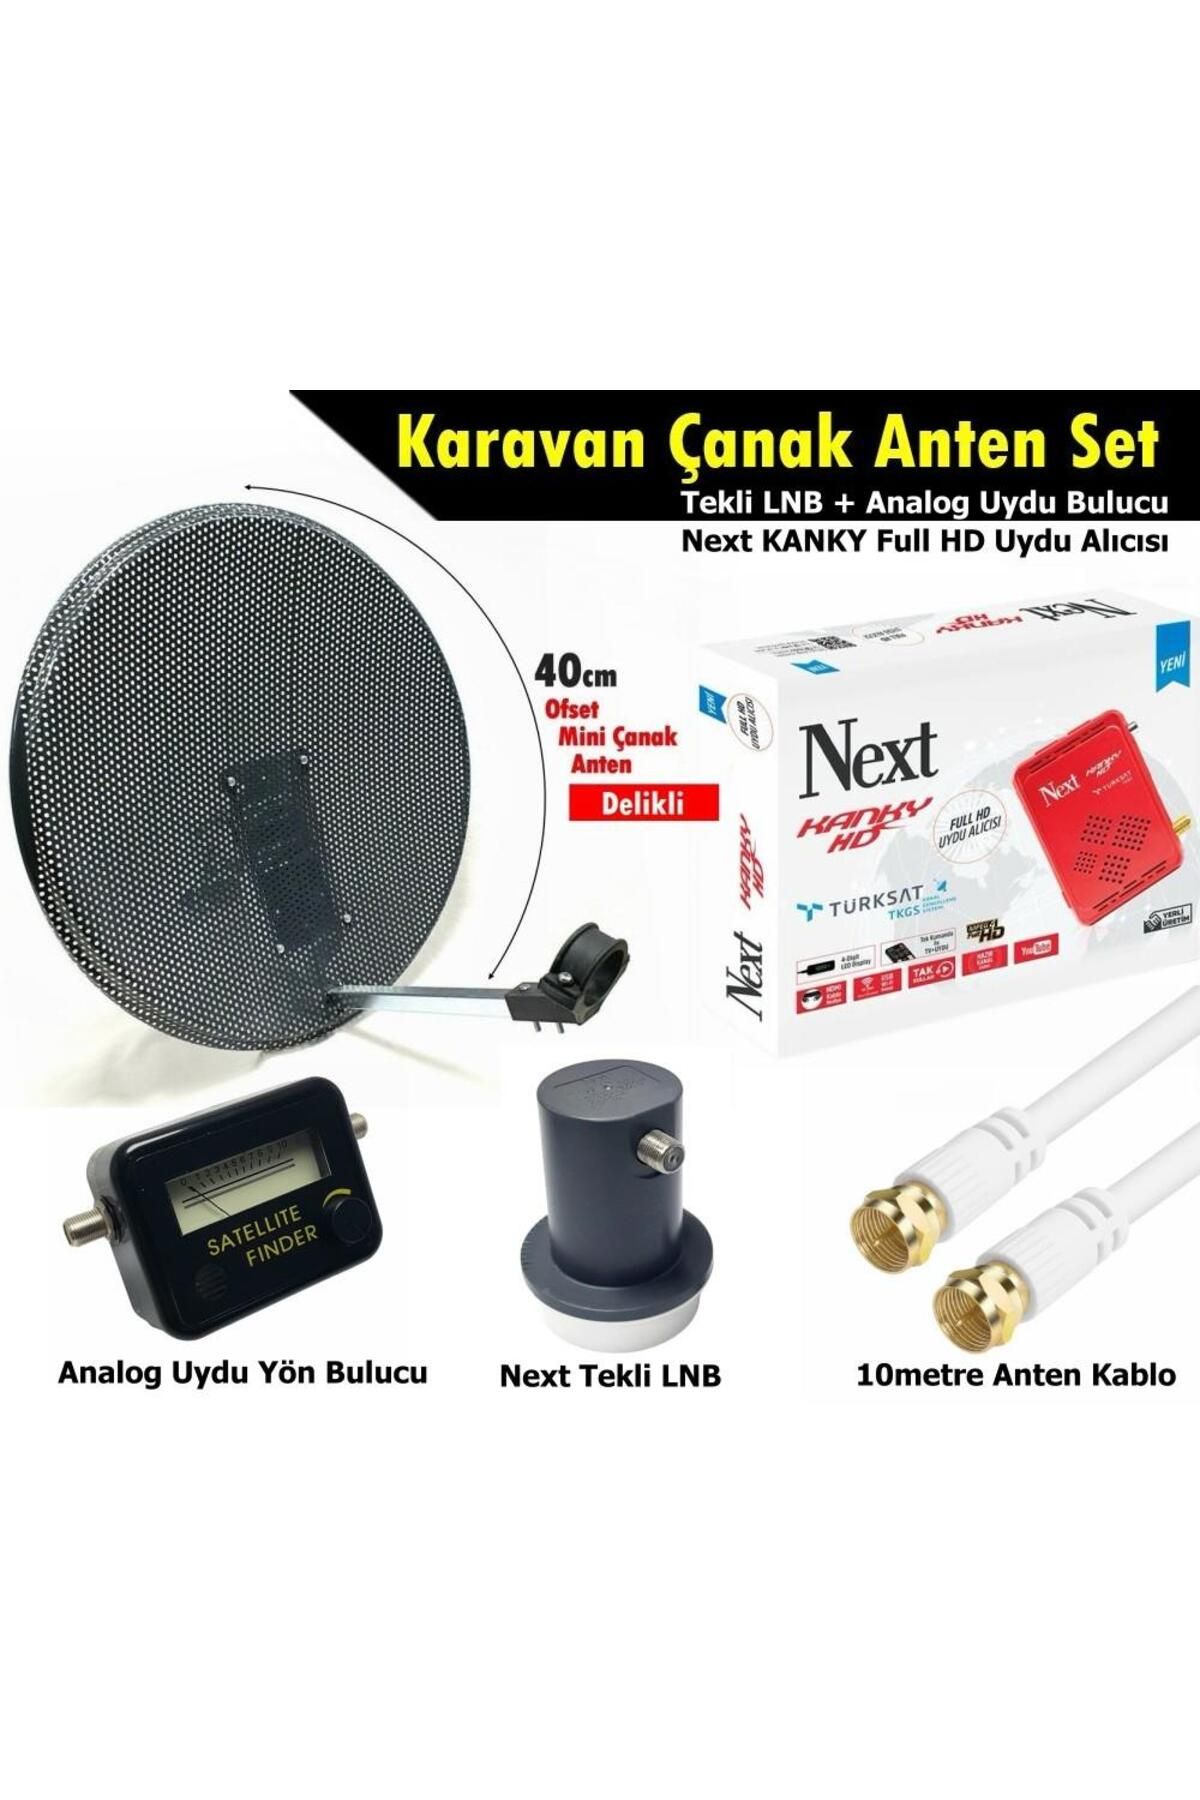 Next Nextstar Antenci 40cm Delikli Karavan Çanak Anten Seti +Next HD Uydu Alıcısı +Analog Uydu Bulucu